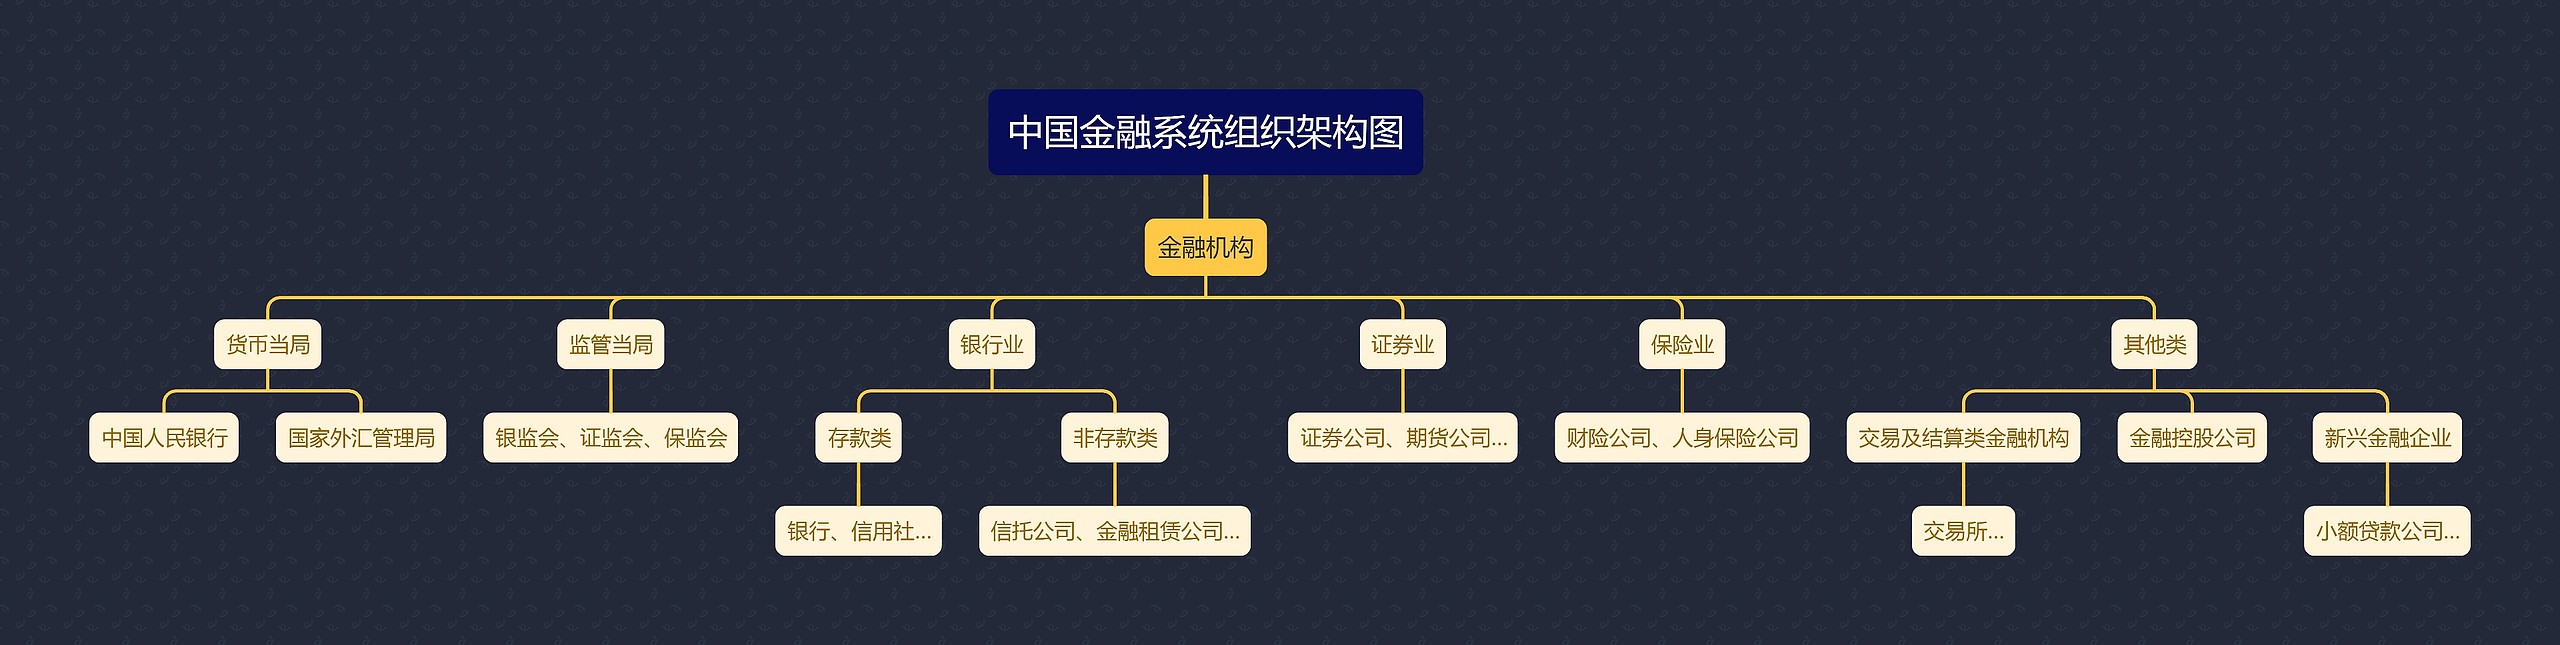 中国金融系统组织架构图